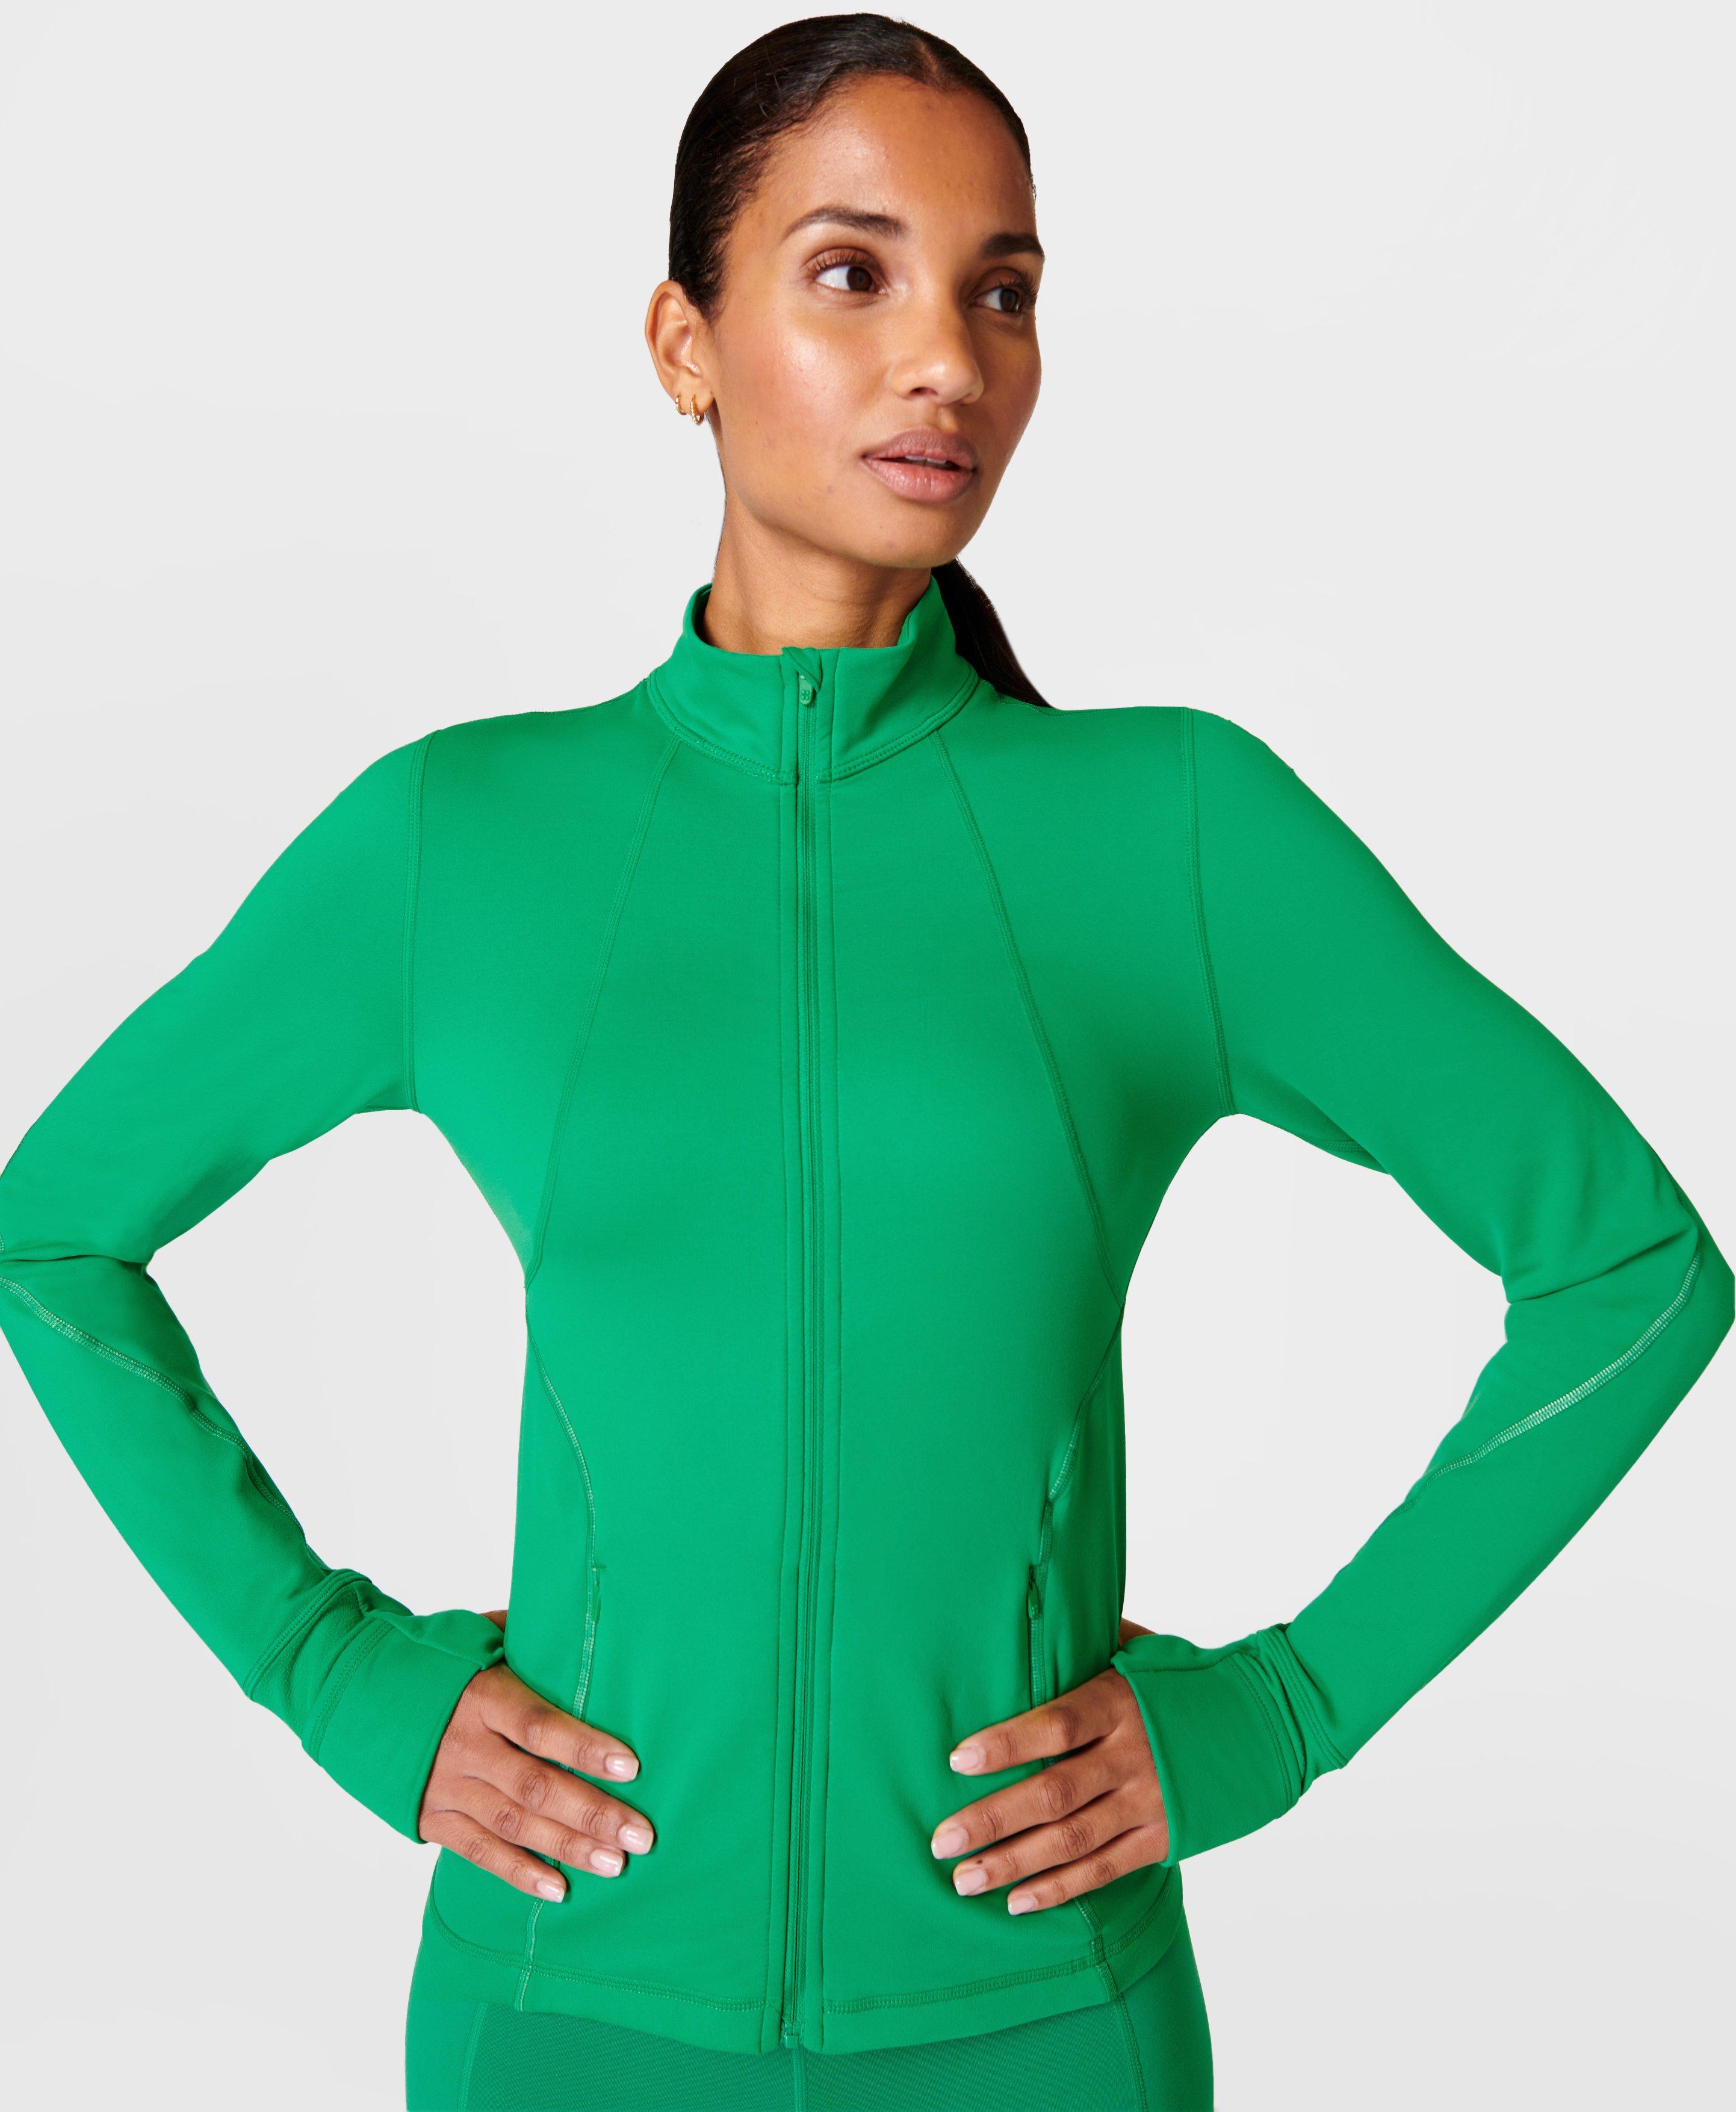 Therma Boost Running Zip Up - Electro Green, Women's Jumpers, Sweatshirts  & Hoodies